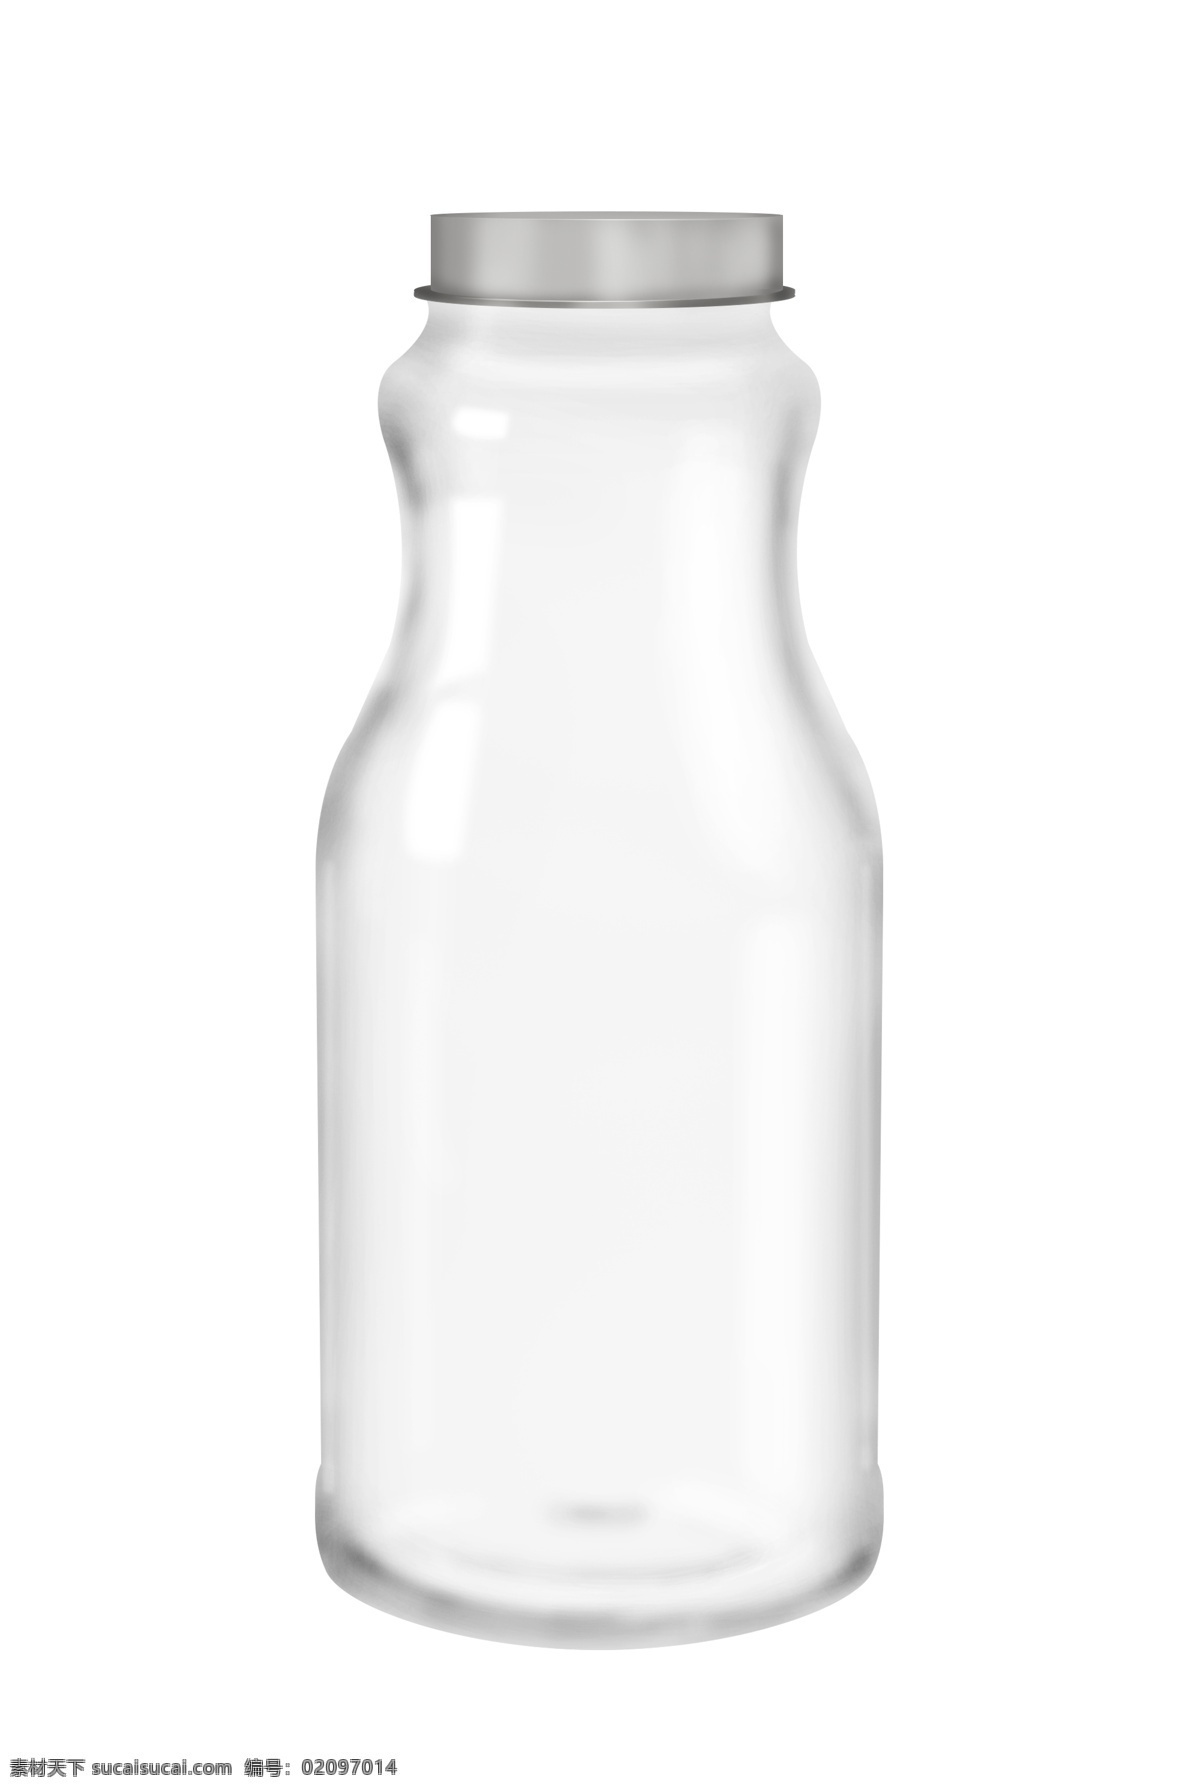 生活用品 玻璃 瓶子 喝水瓶子 白色瓶子 家庭用品 大号瓶子 平面瓶子 平面设计 瓶子设计